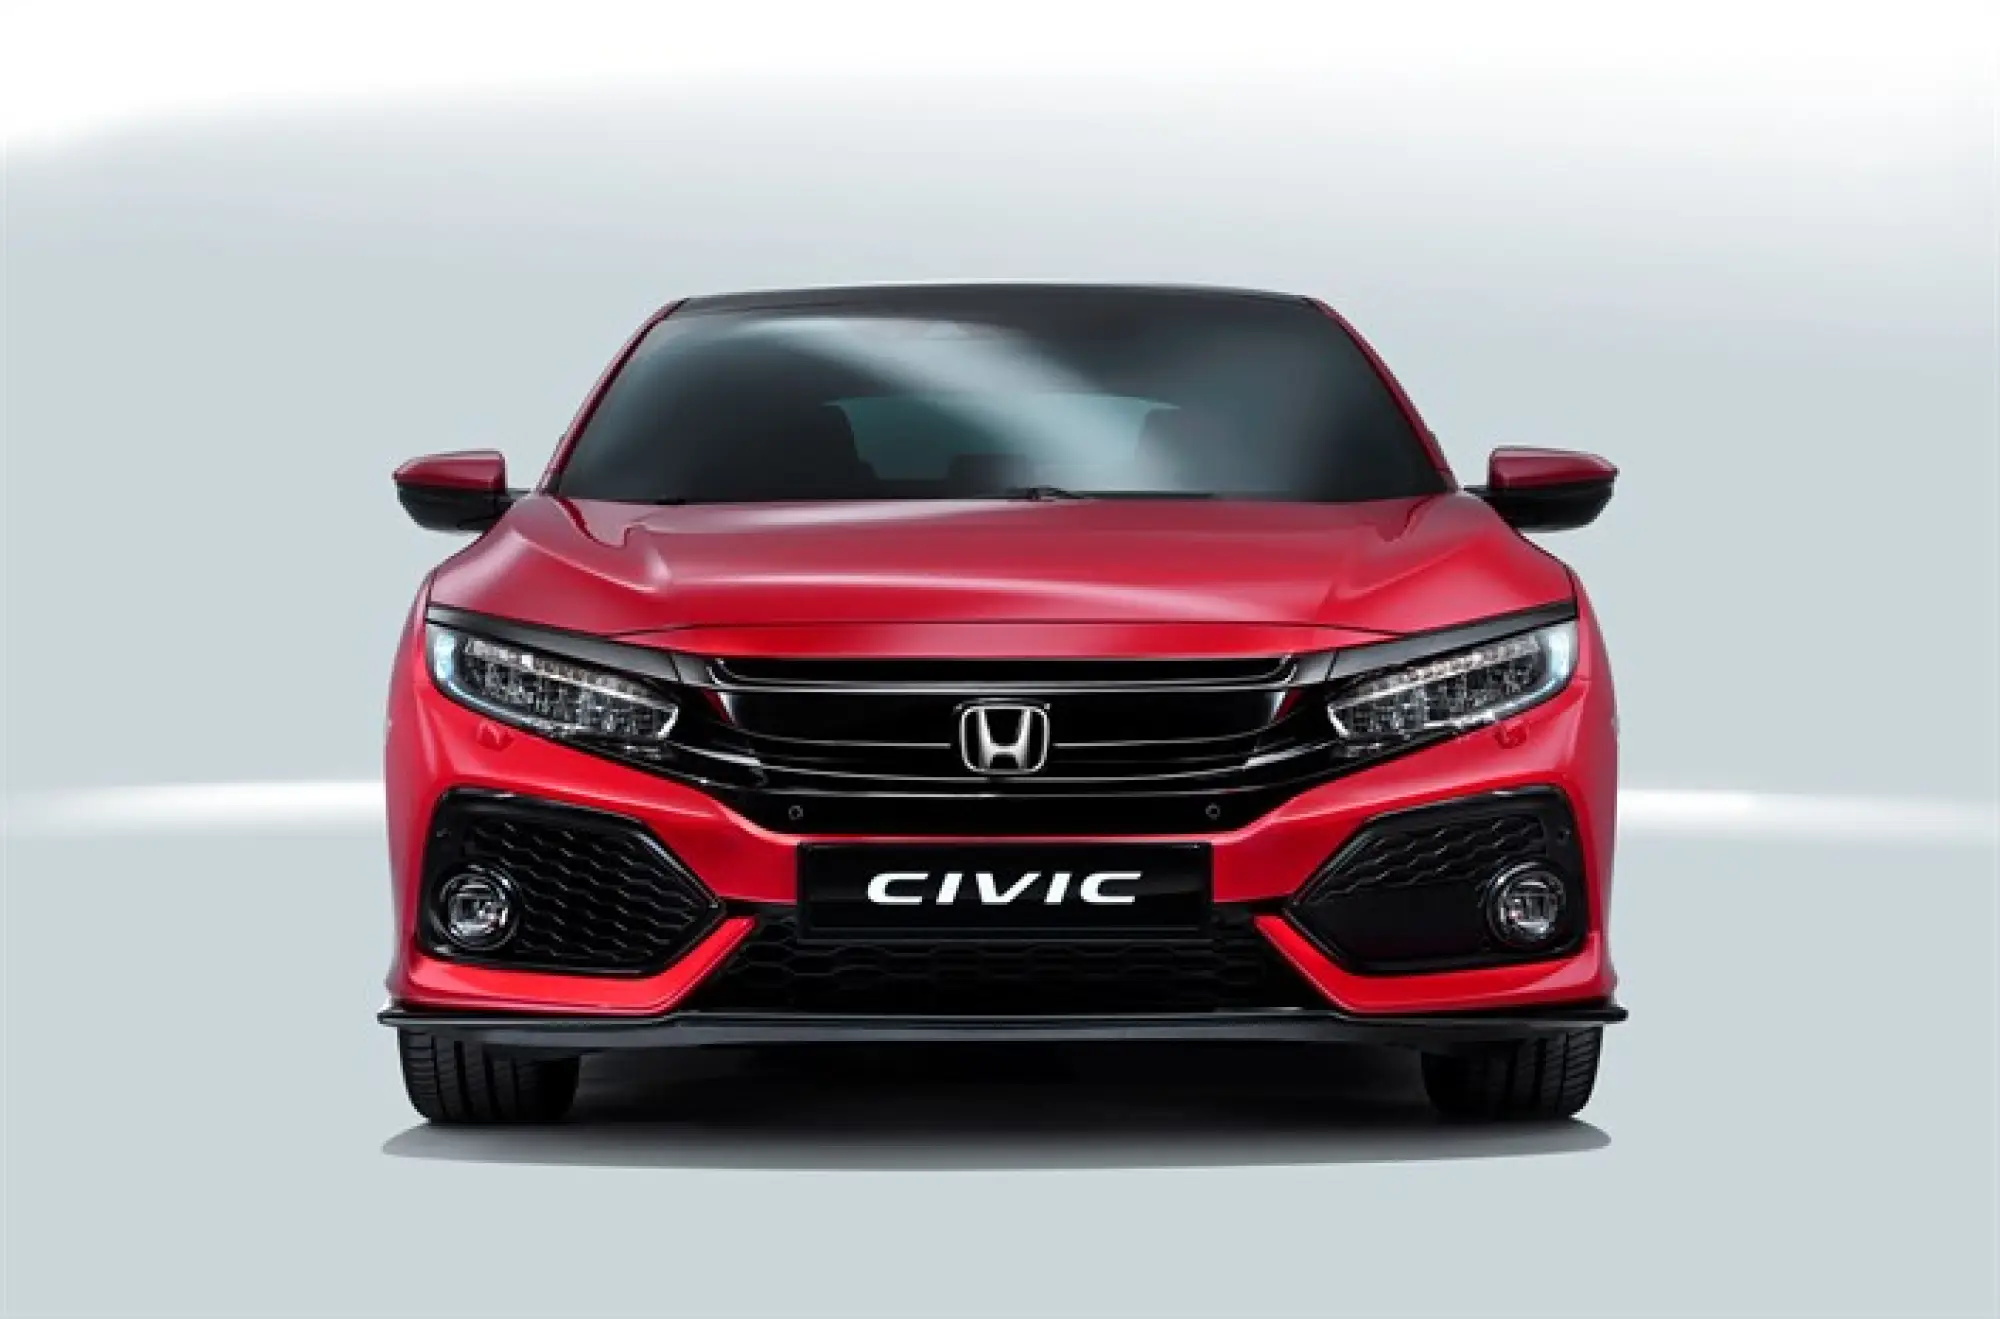 Honda Civic 5 porte foto ufficiali 29 settembre 2016 - 13